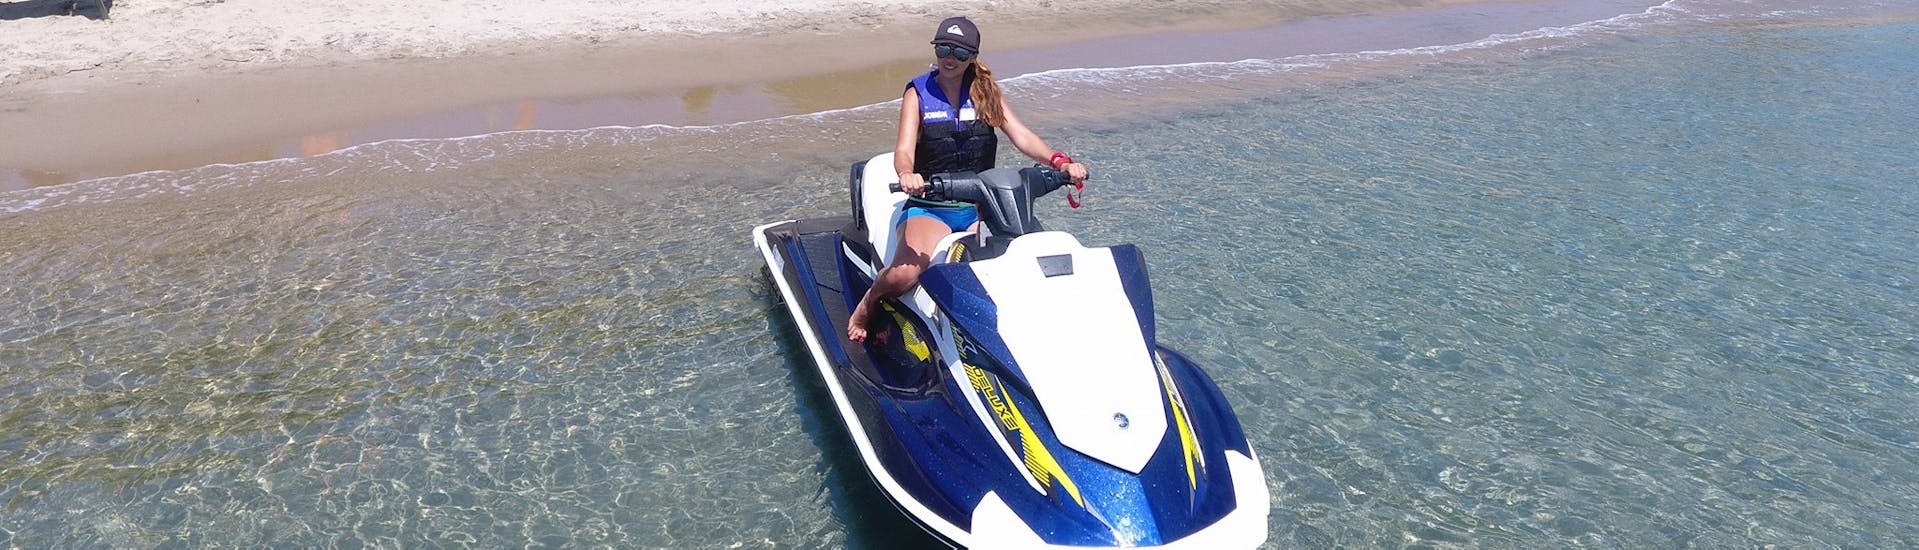 Una mujer en una moto de agua en Paradise Beach en Kos, con Water Club Paradise Beach Kos.